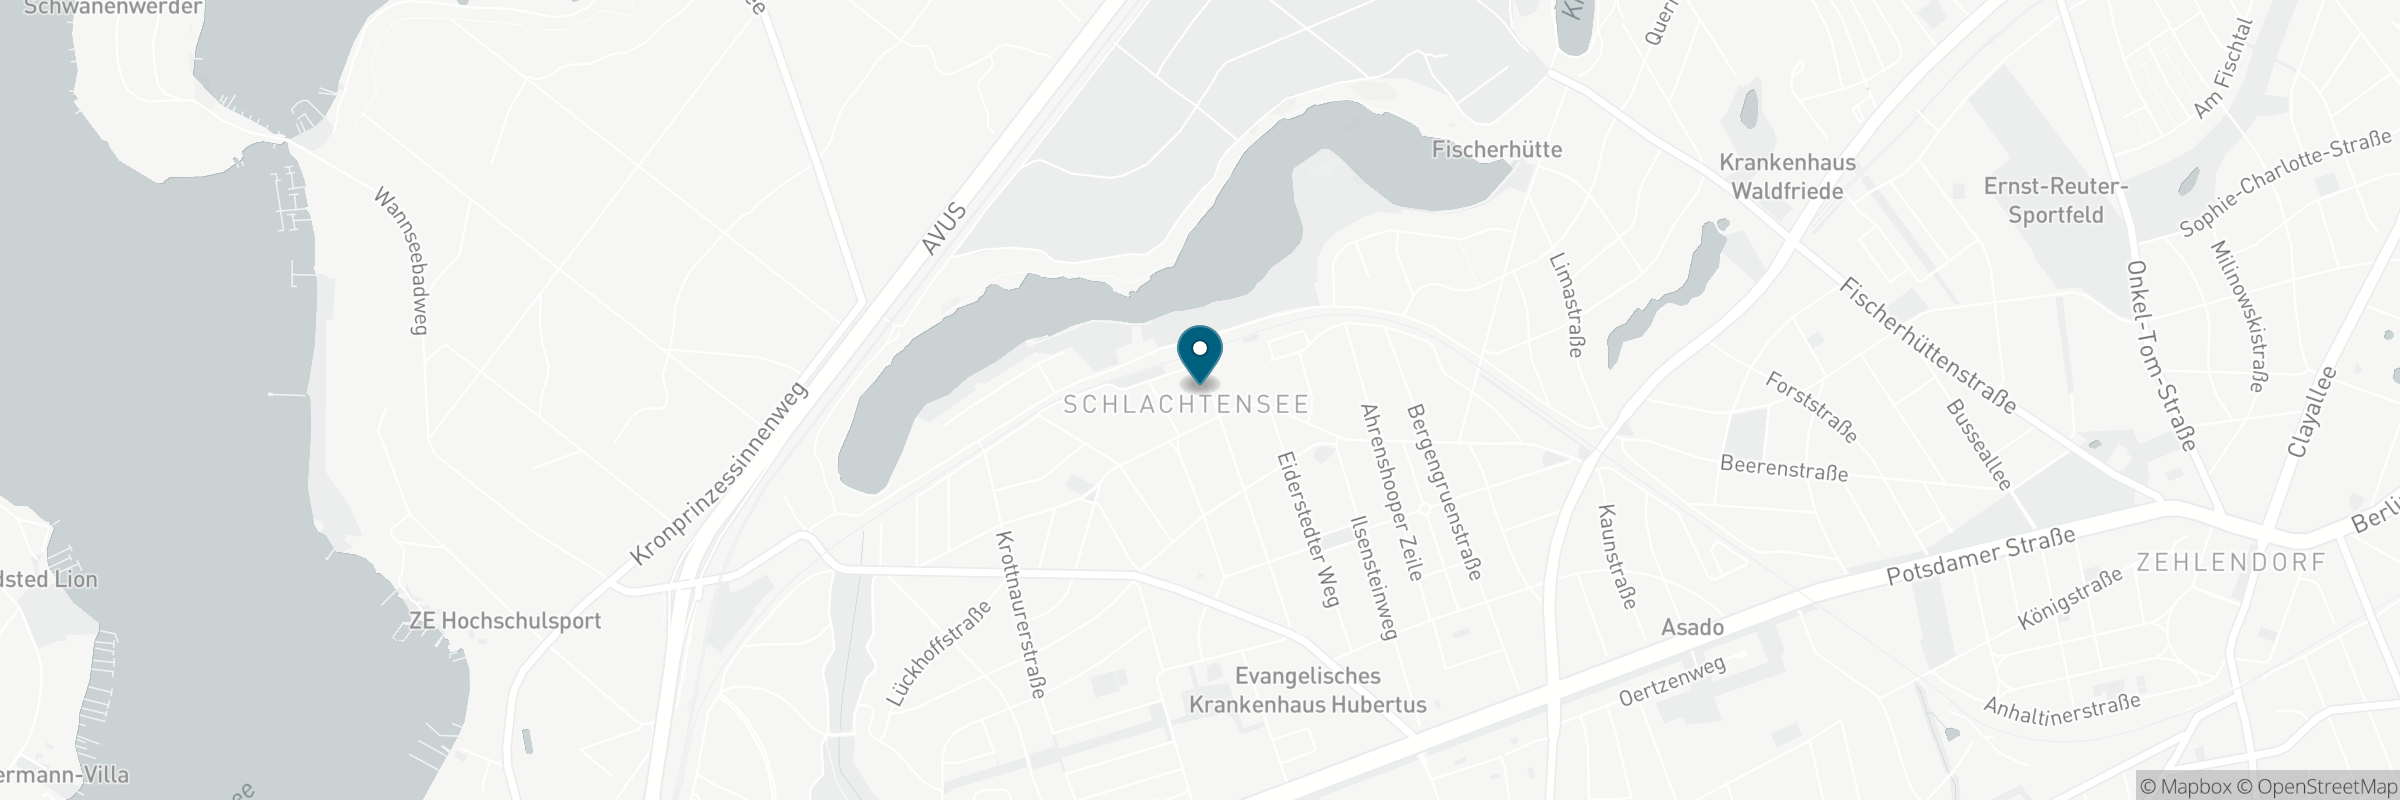 Die Karte zeigt die Adresse von Enoteca Paradiso